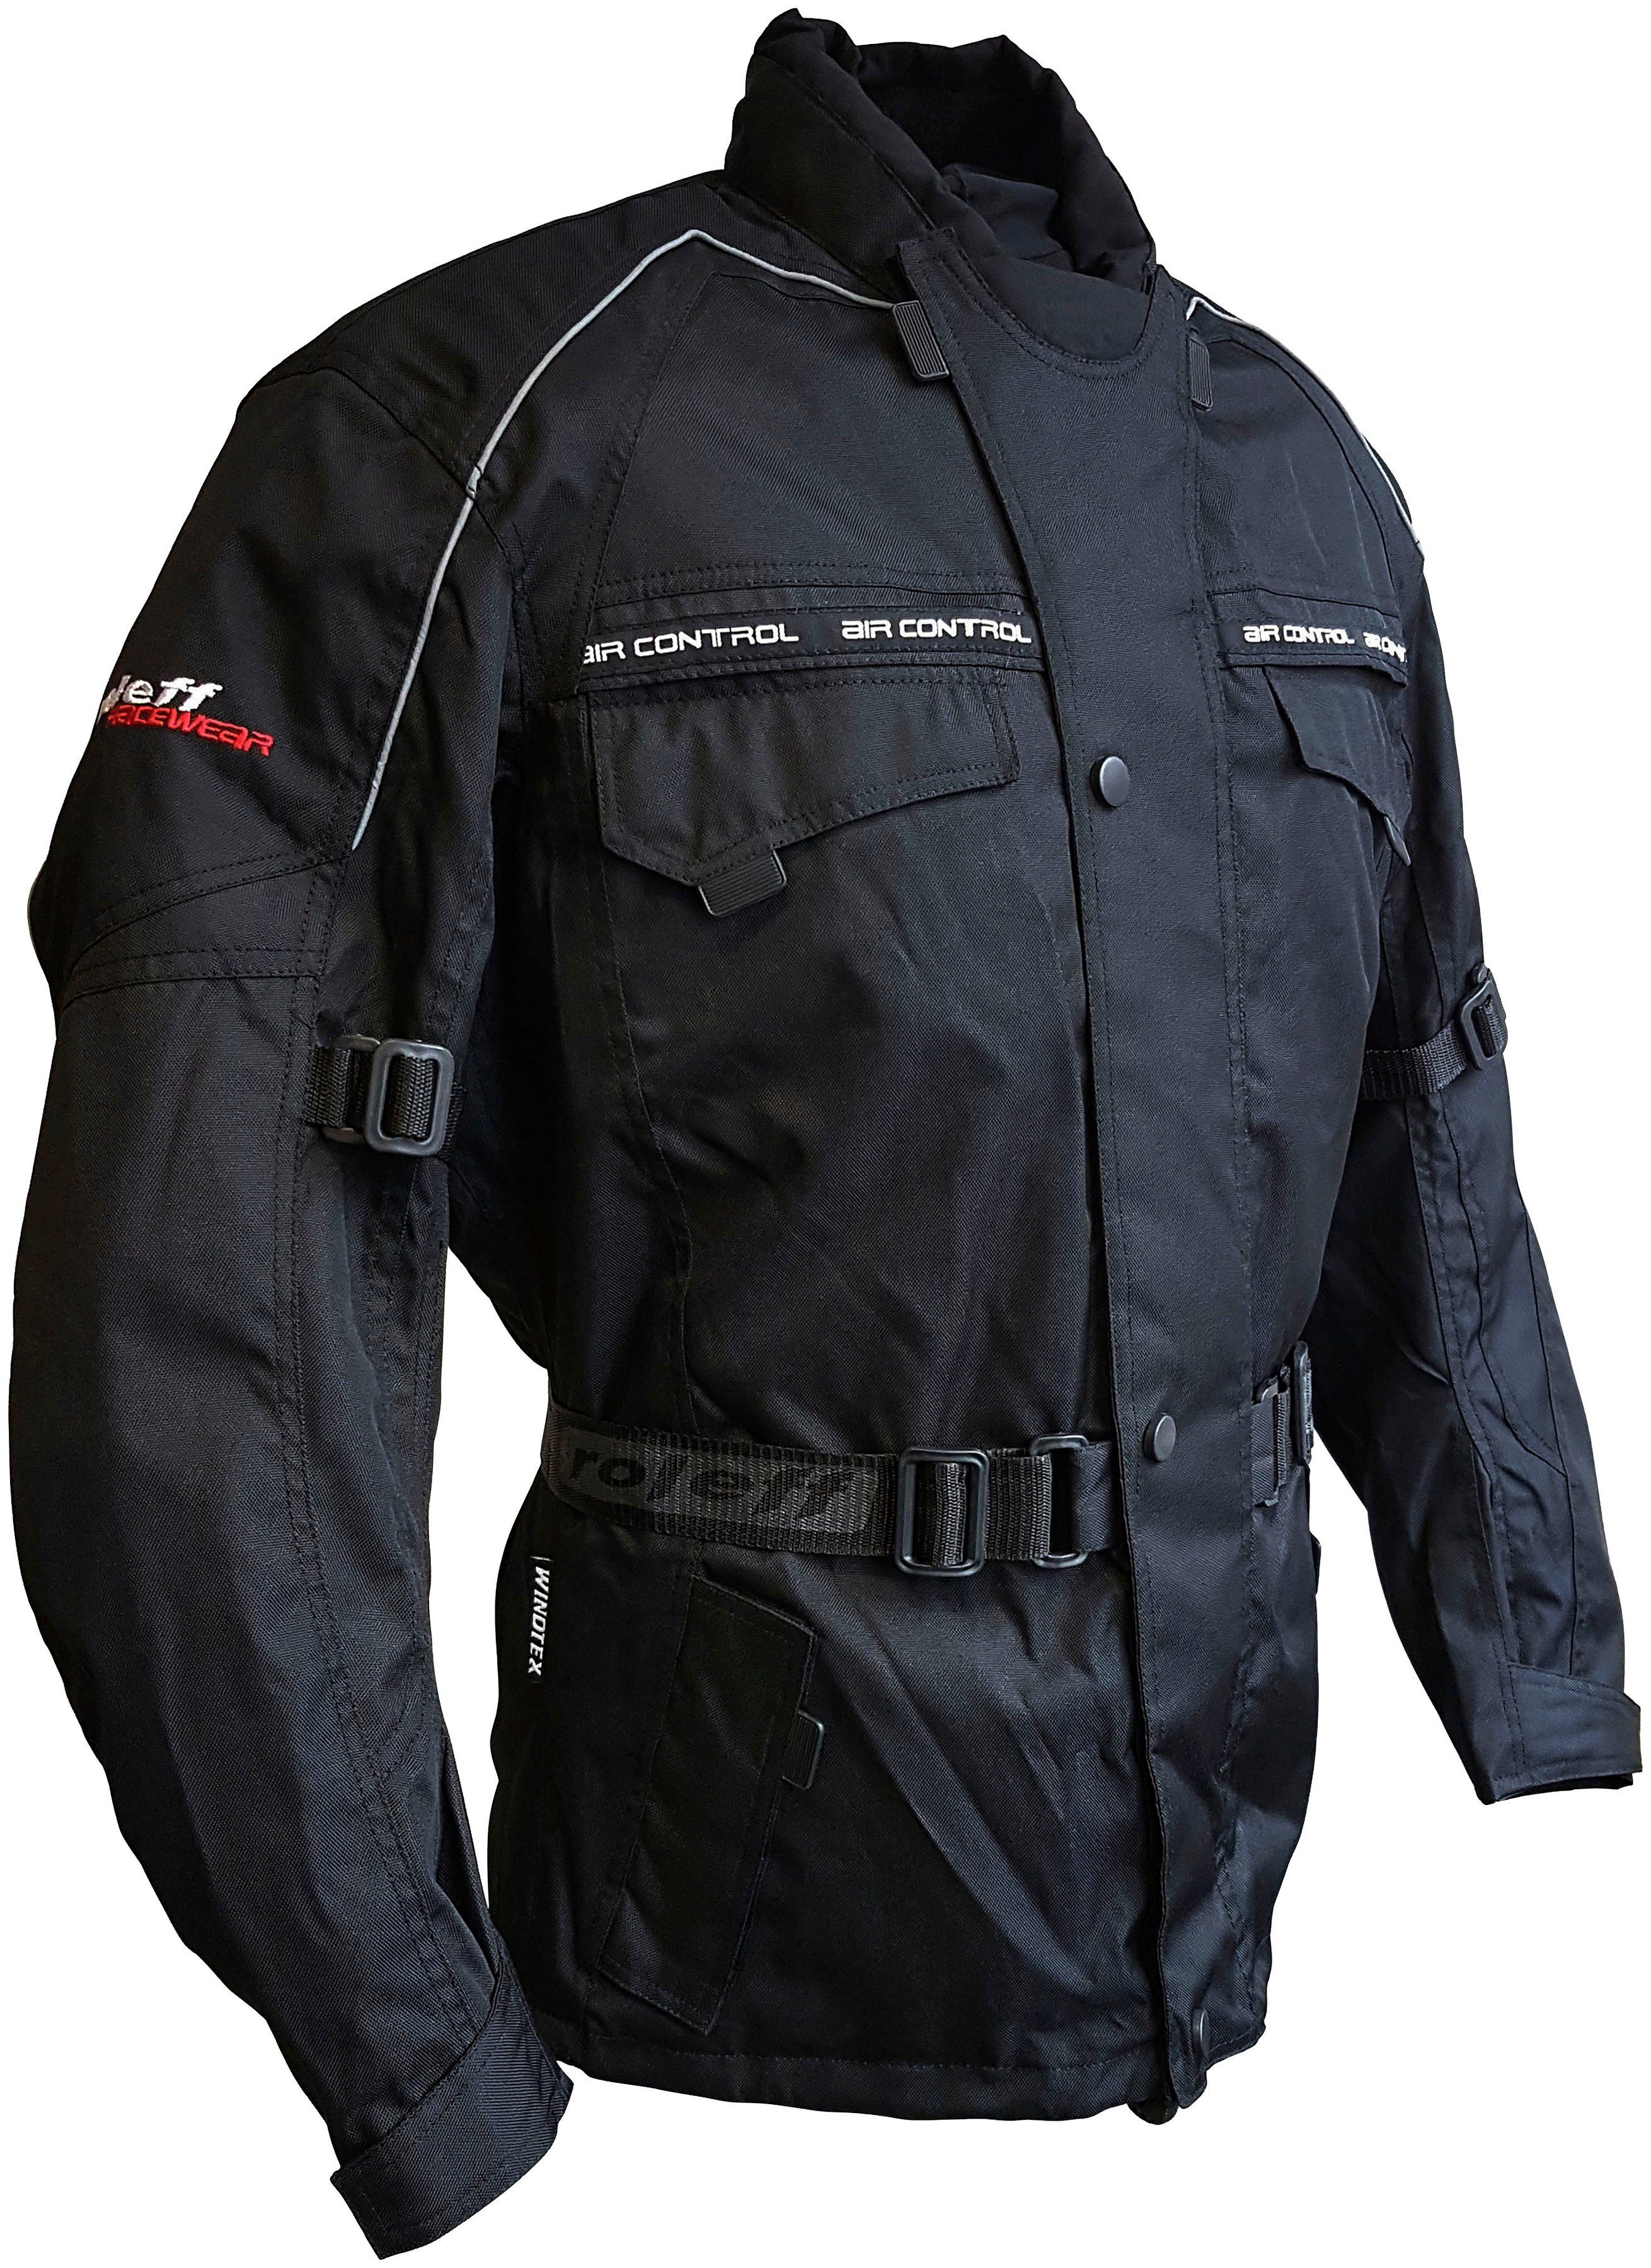 roleff Motorradjacke Reno mit schwarz Belüftungslöcher Taschen, 4 3 Protektoren